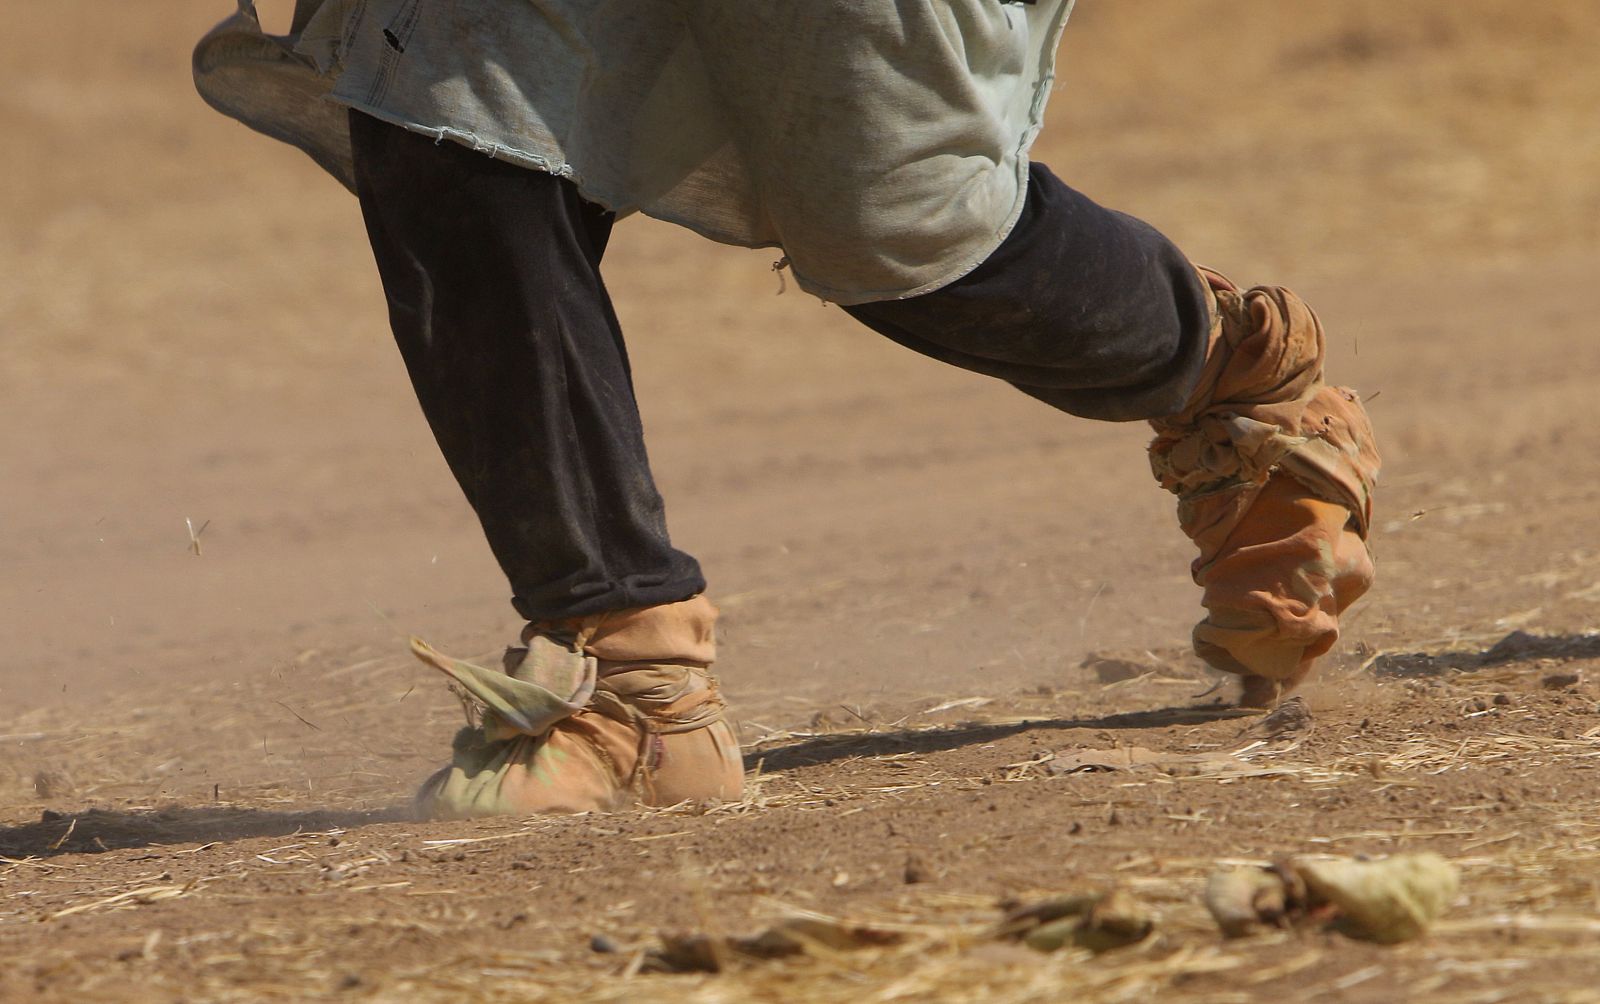 Una desplazada yazidí llega con un calzado precaria a la frontera siria huyendo de los yihadistas